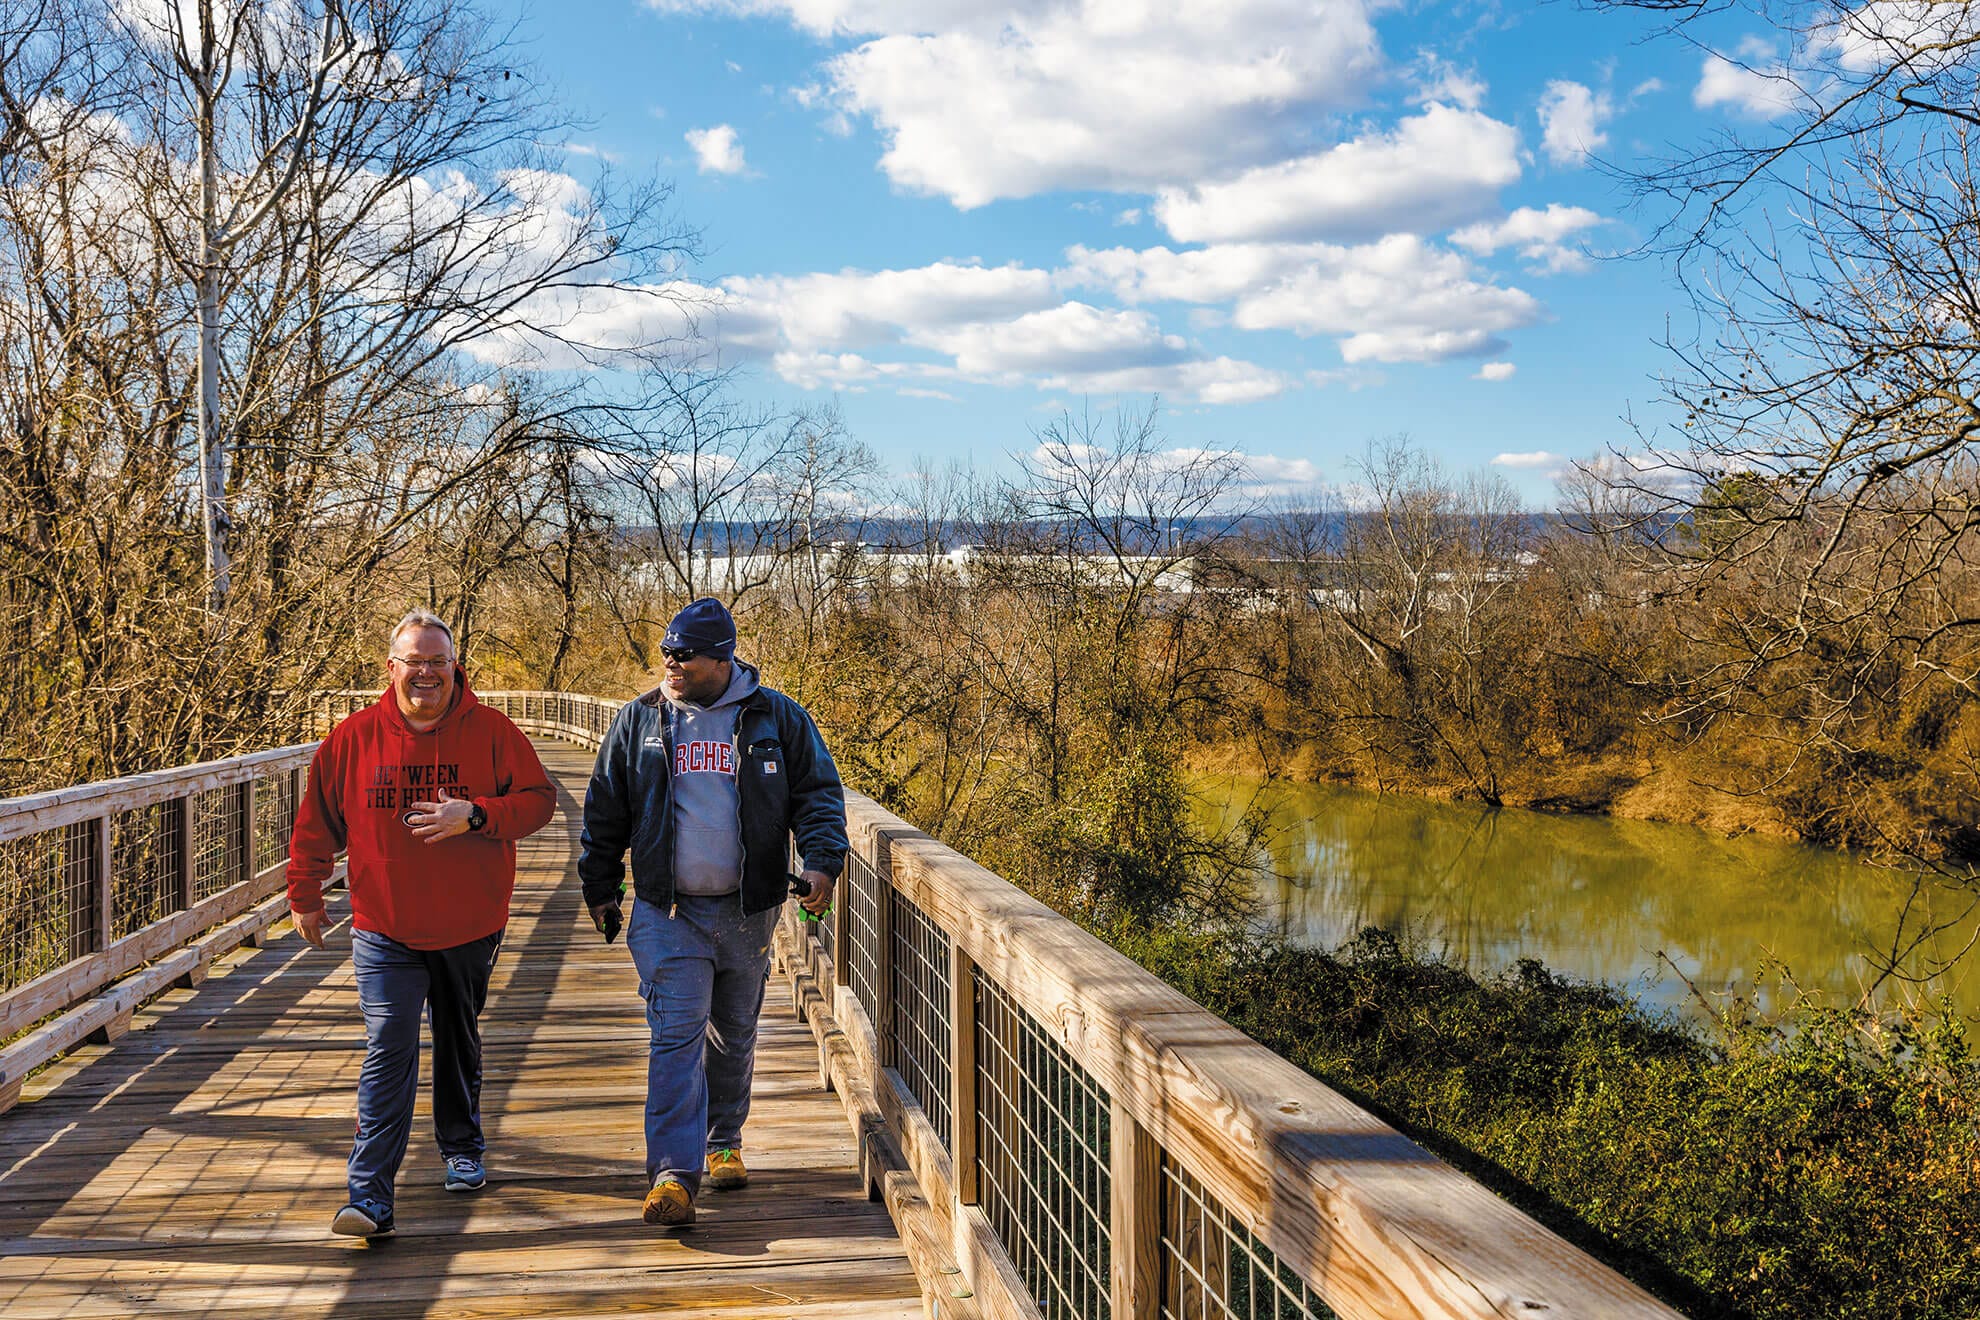 Two men walking on a wooden bridge.